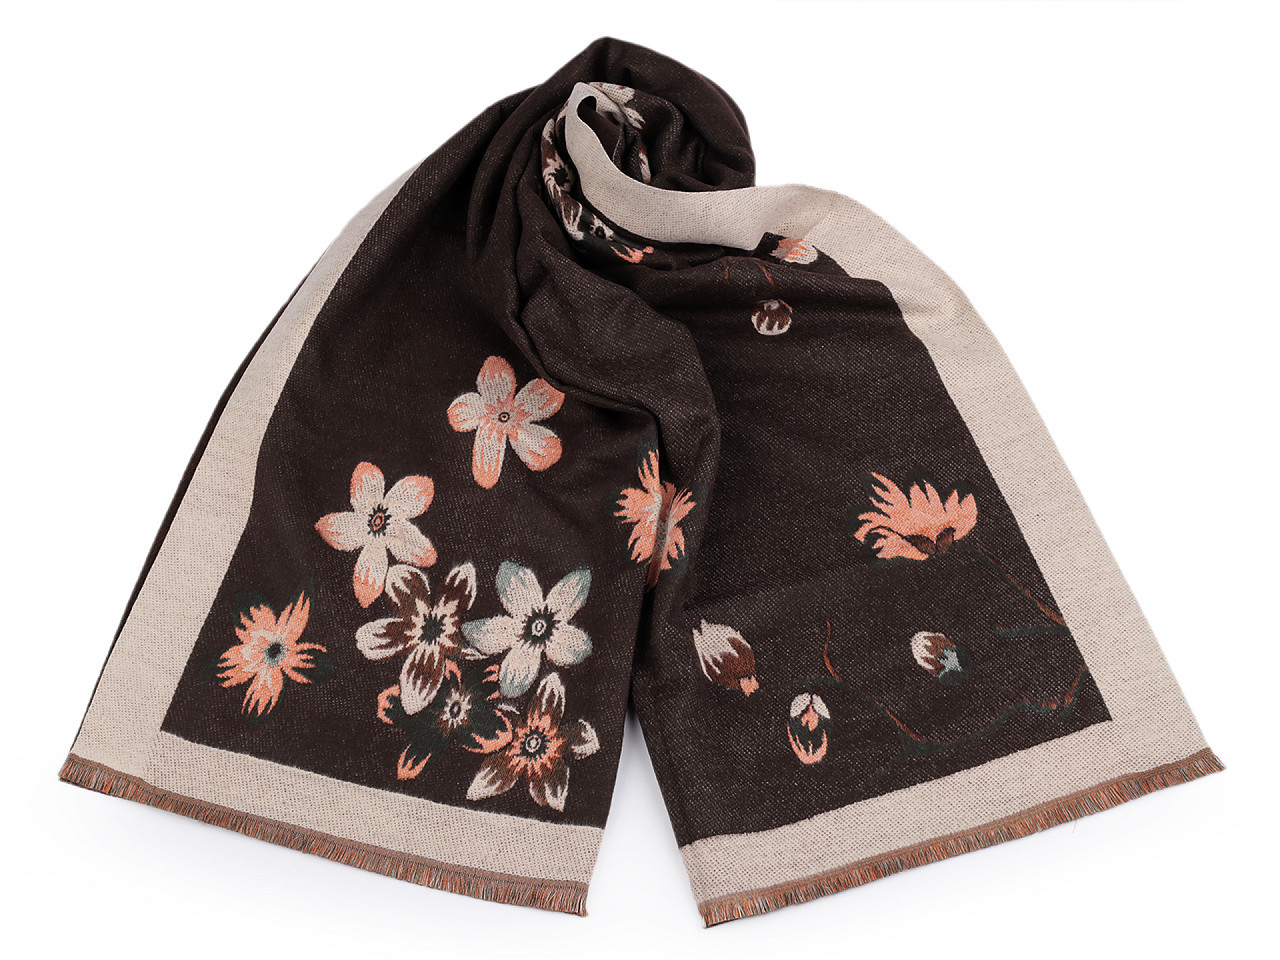 Šátek / šála typu kašmír s třásněmi, květy 65x190 cm, barva 2 béžová světlá hnědá